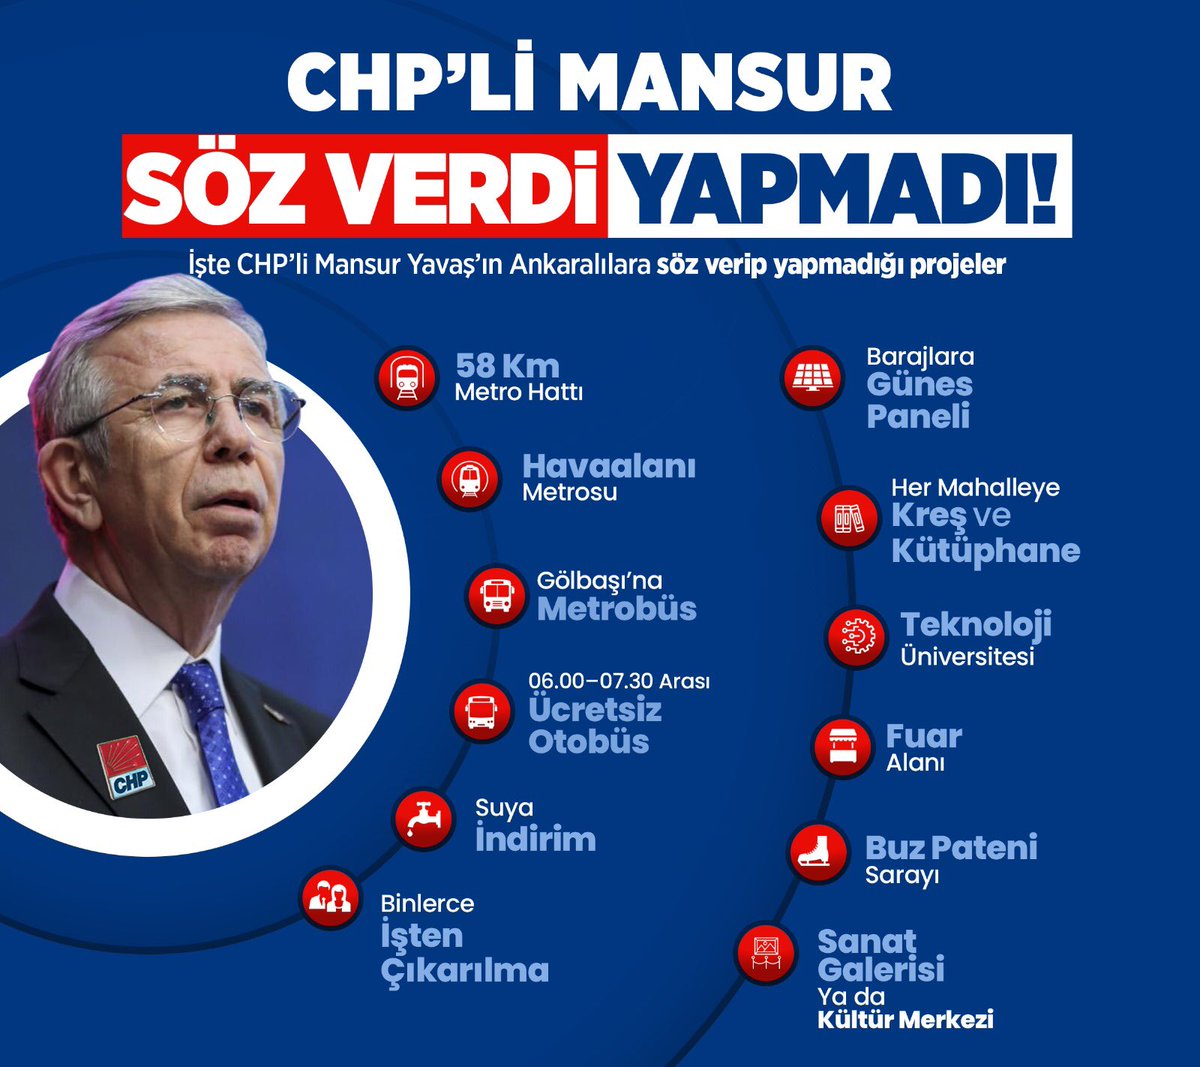 CHP'li Mansur Yavaş'ın Ankara halkına söz verip yapmadığı projeler... #MansurSözVerdiYapmadı